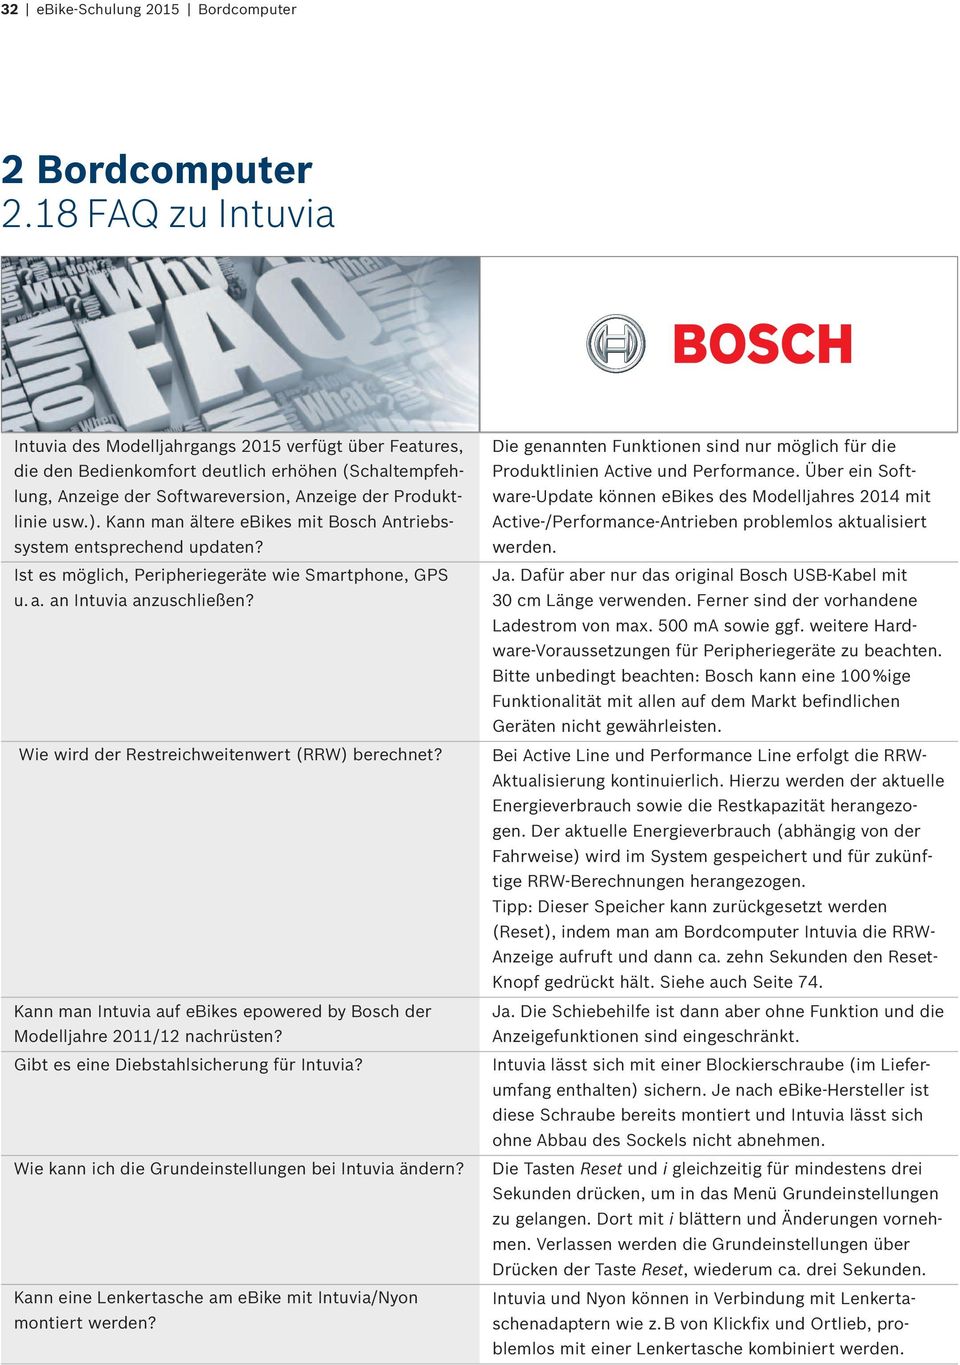 Kann man ältere ebikes mit Bosch Antriebssystem entsprechend updaten? Ist es möglich, Peripheriegeräte wie Smartphone, GPS u. a. an Intuvia anzuschließen?